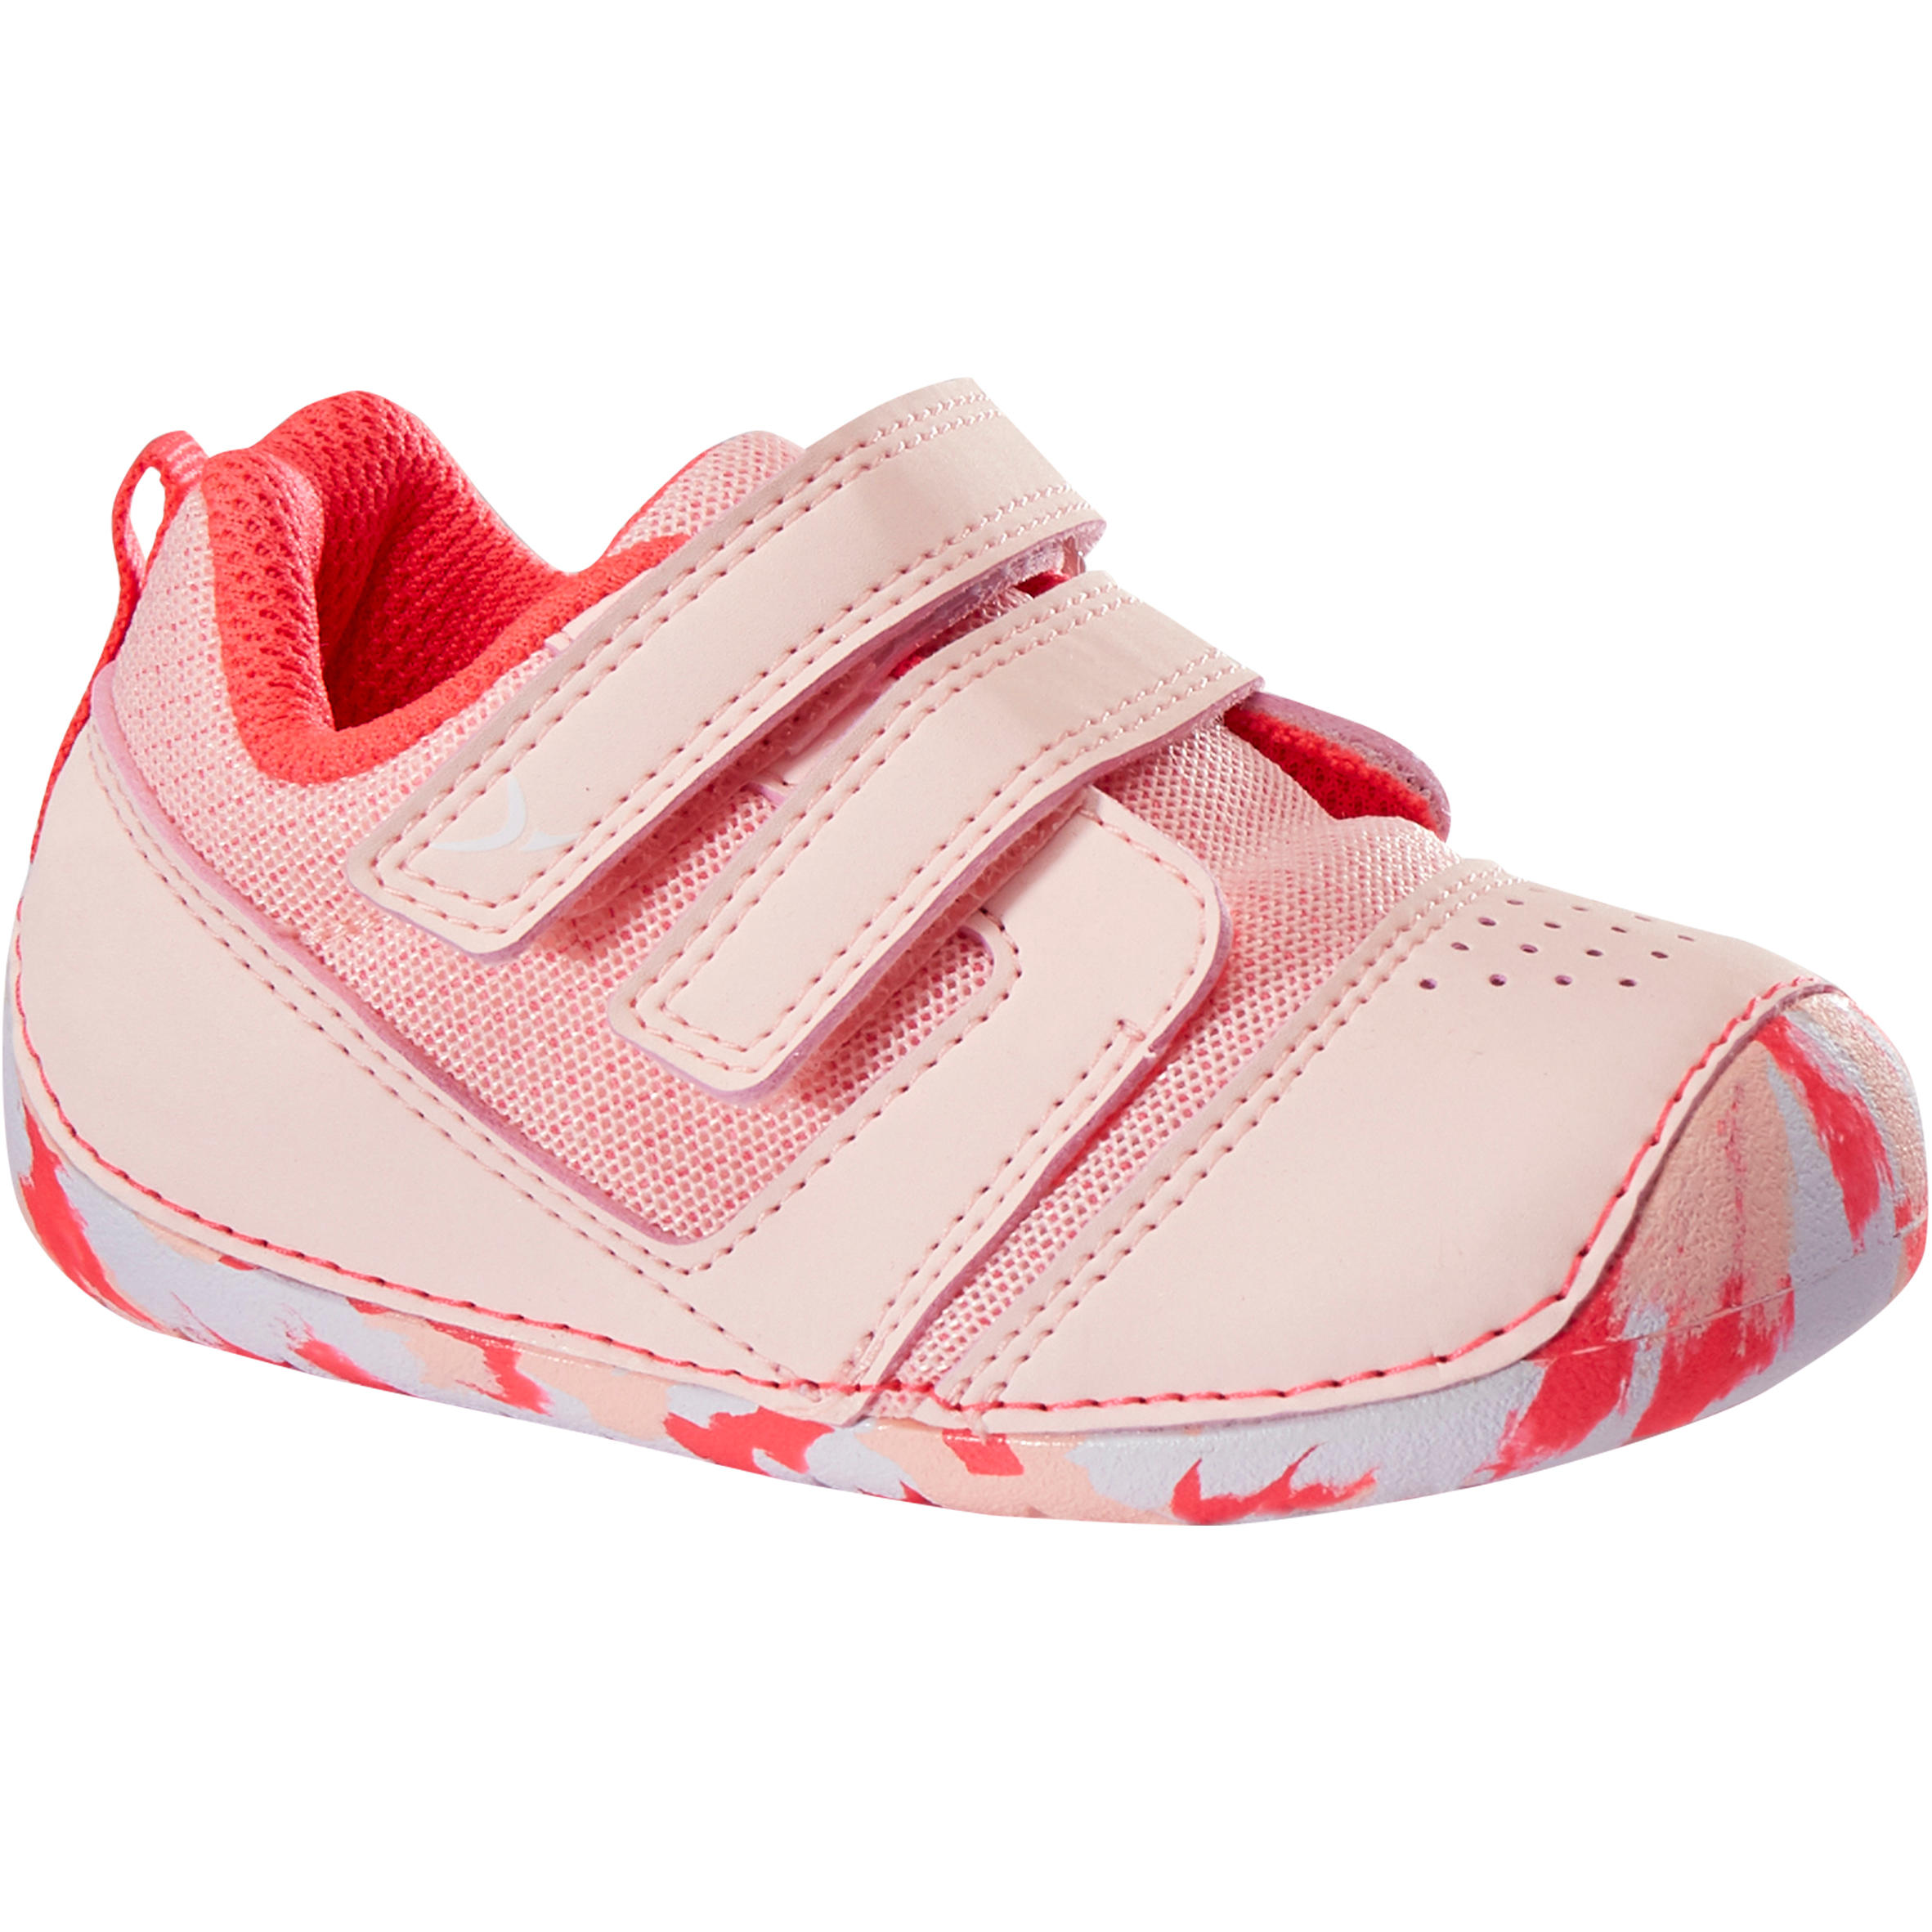 Comprar Zapatillas de Bebé Online | Decathlon